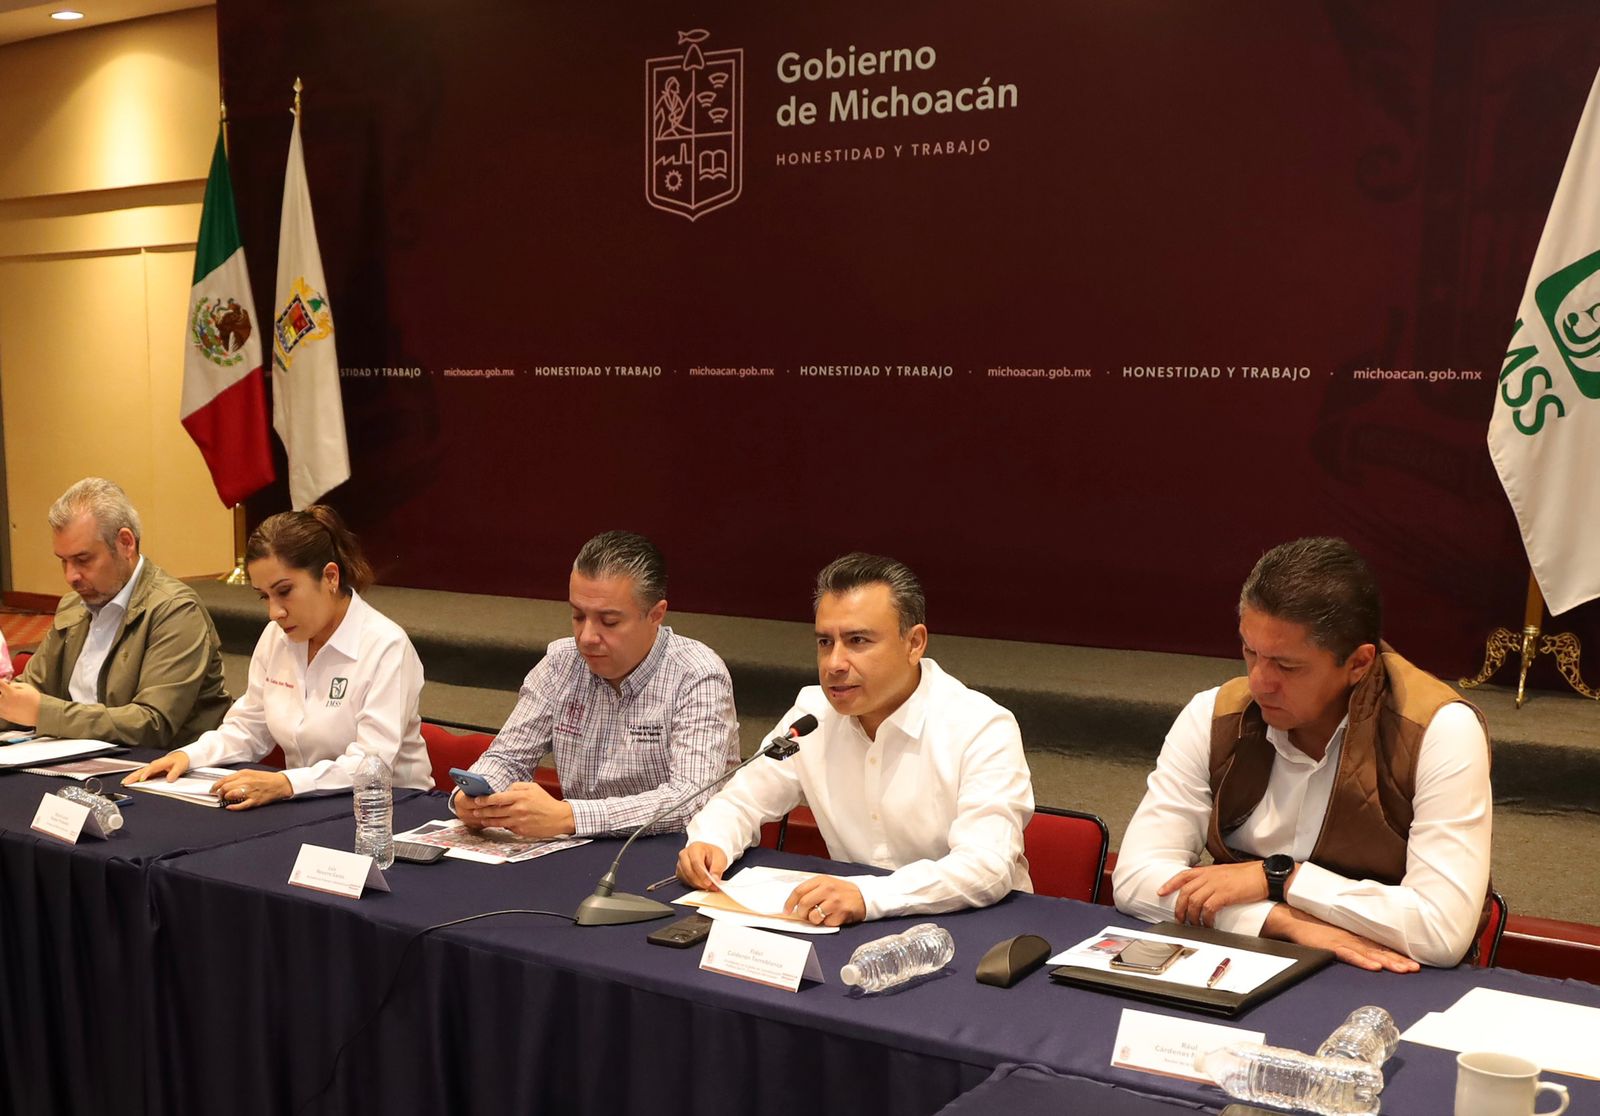 Traslado del IMSS a Michoacán democratizará